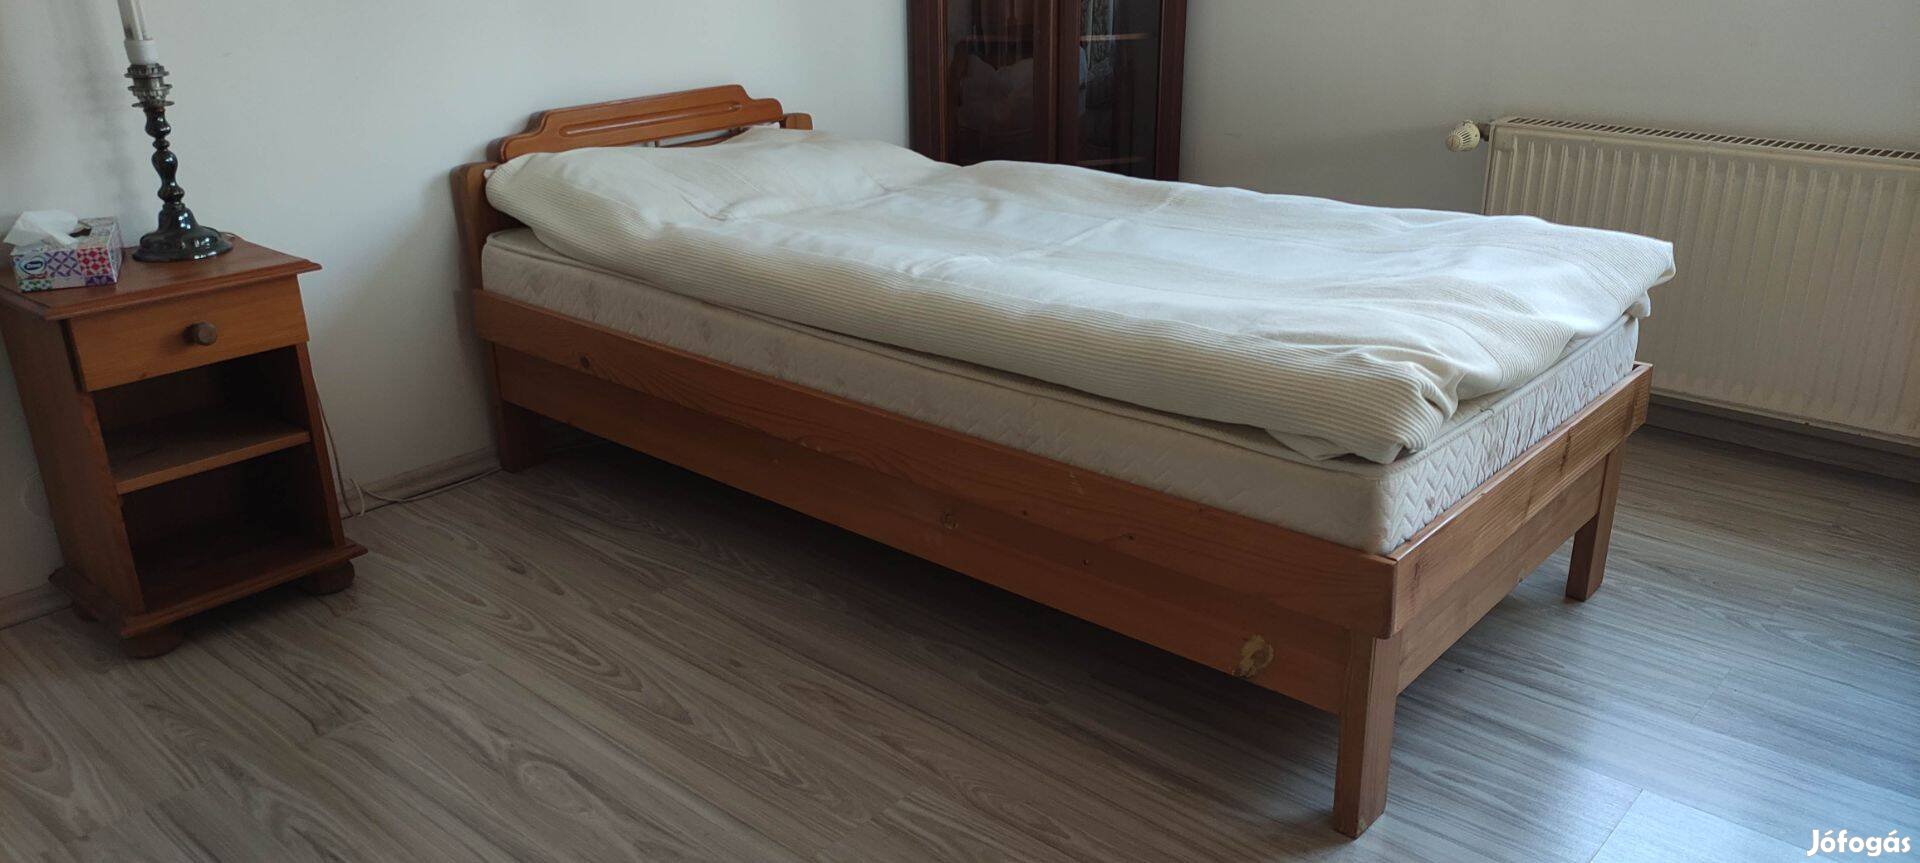 Asztalos által egyedi méretre gyártott tömör fenyőfa ágyneműtartós ágy